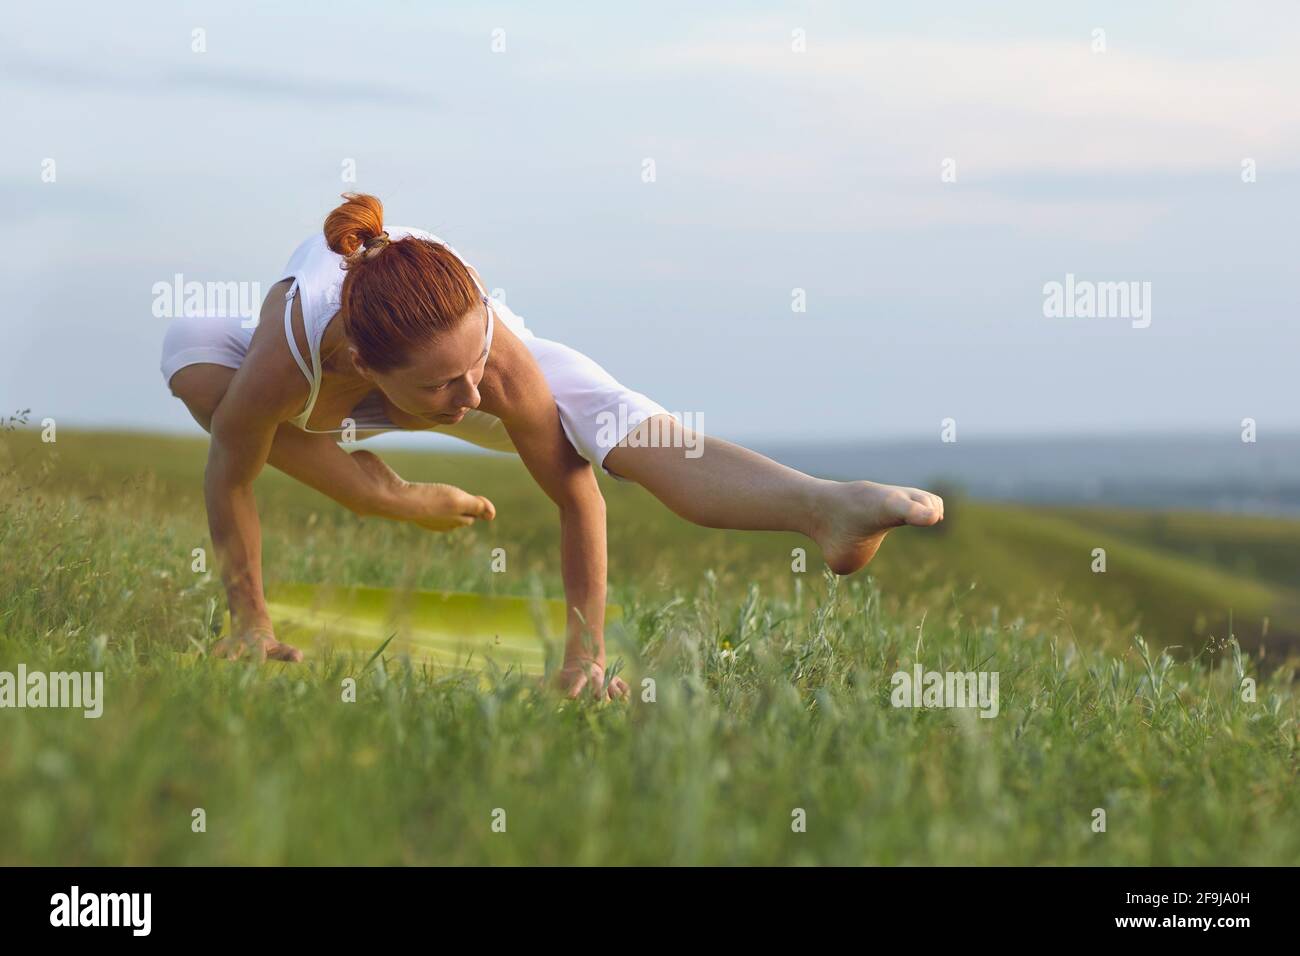 Amante dello yoga motivato che si bilancia sulle mani praticando asana in pace campo estivo Foto Stock